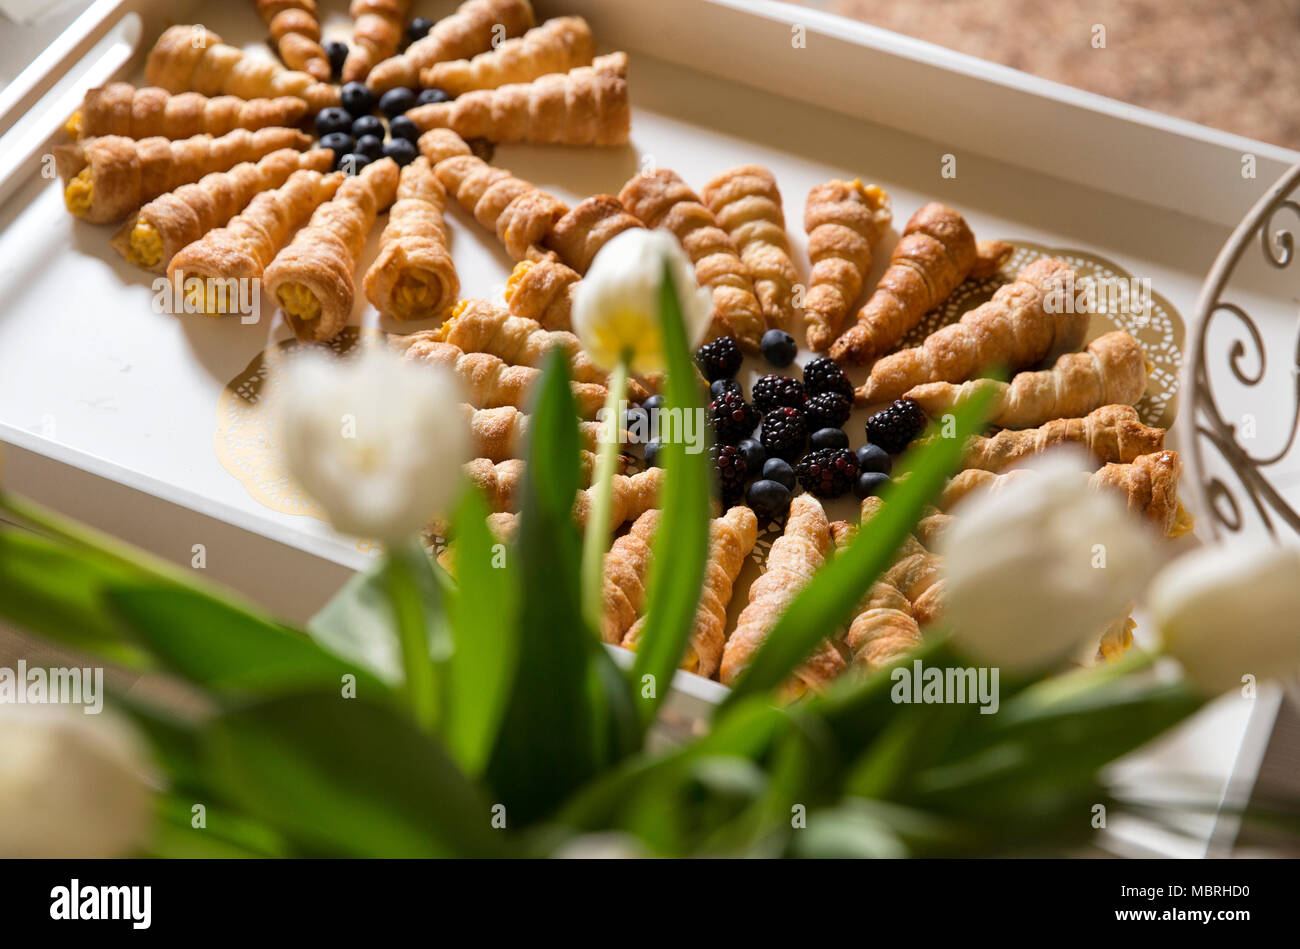 Primo piano di un buffet con un vassoio di legno con i cannoli in esso, riempito con crema pasticcera e decorata con more. Tulipani bianco sul tavolo. Foto Stock